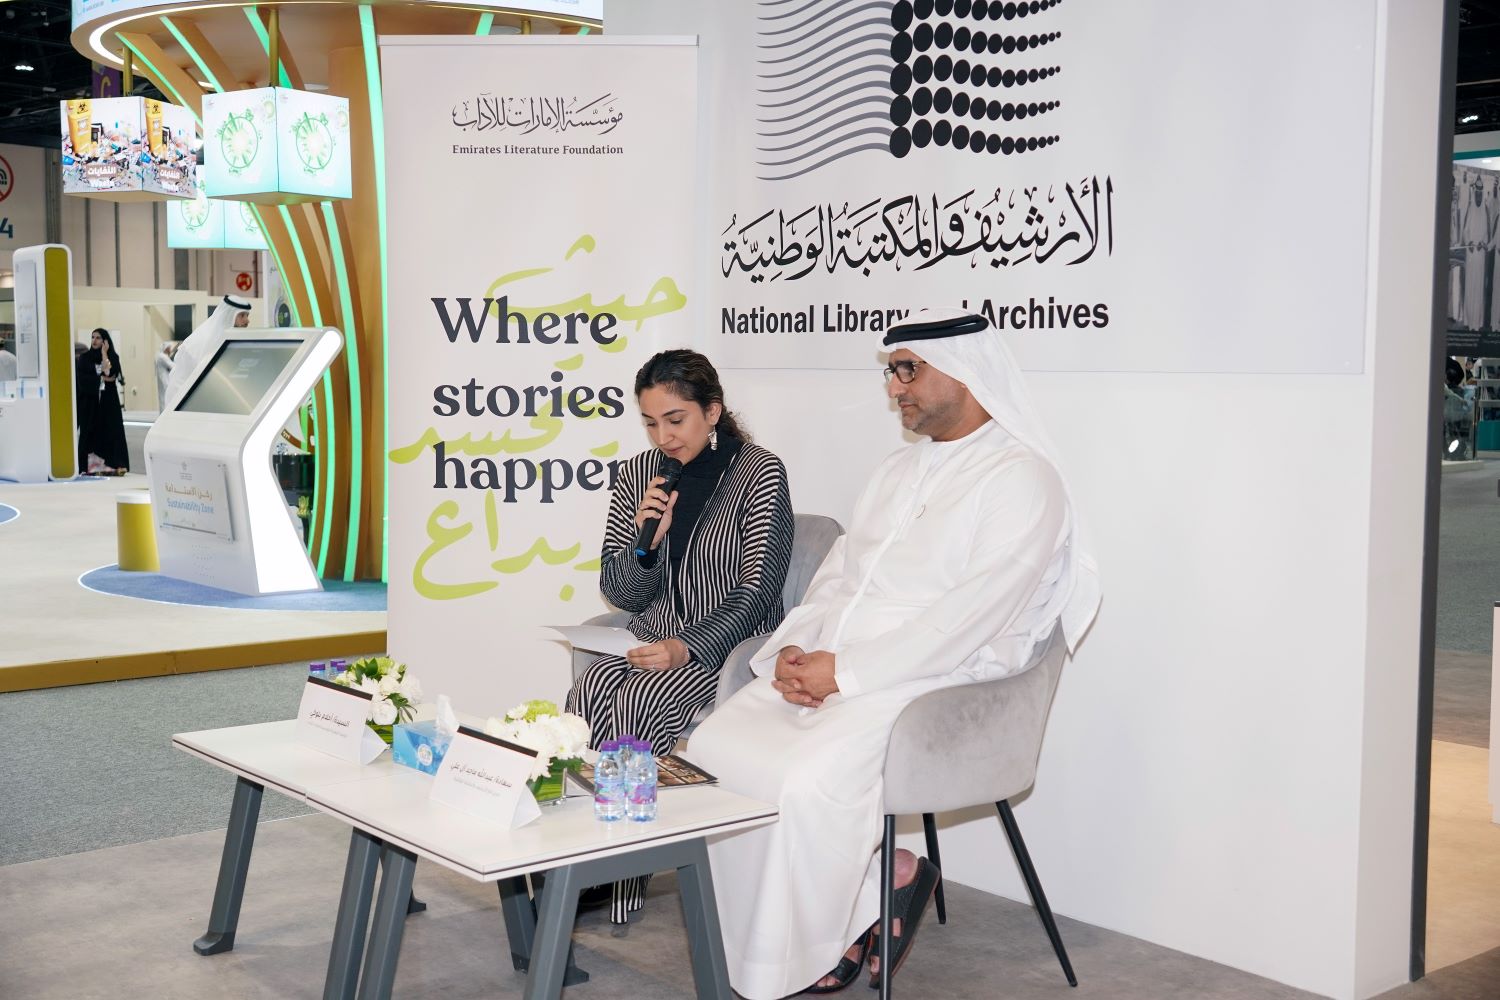 Emirates Literature Foundation culture UAE literature